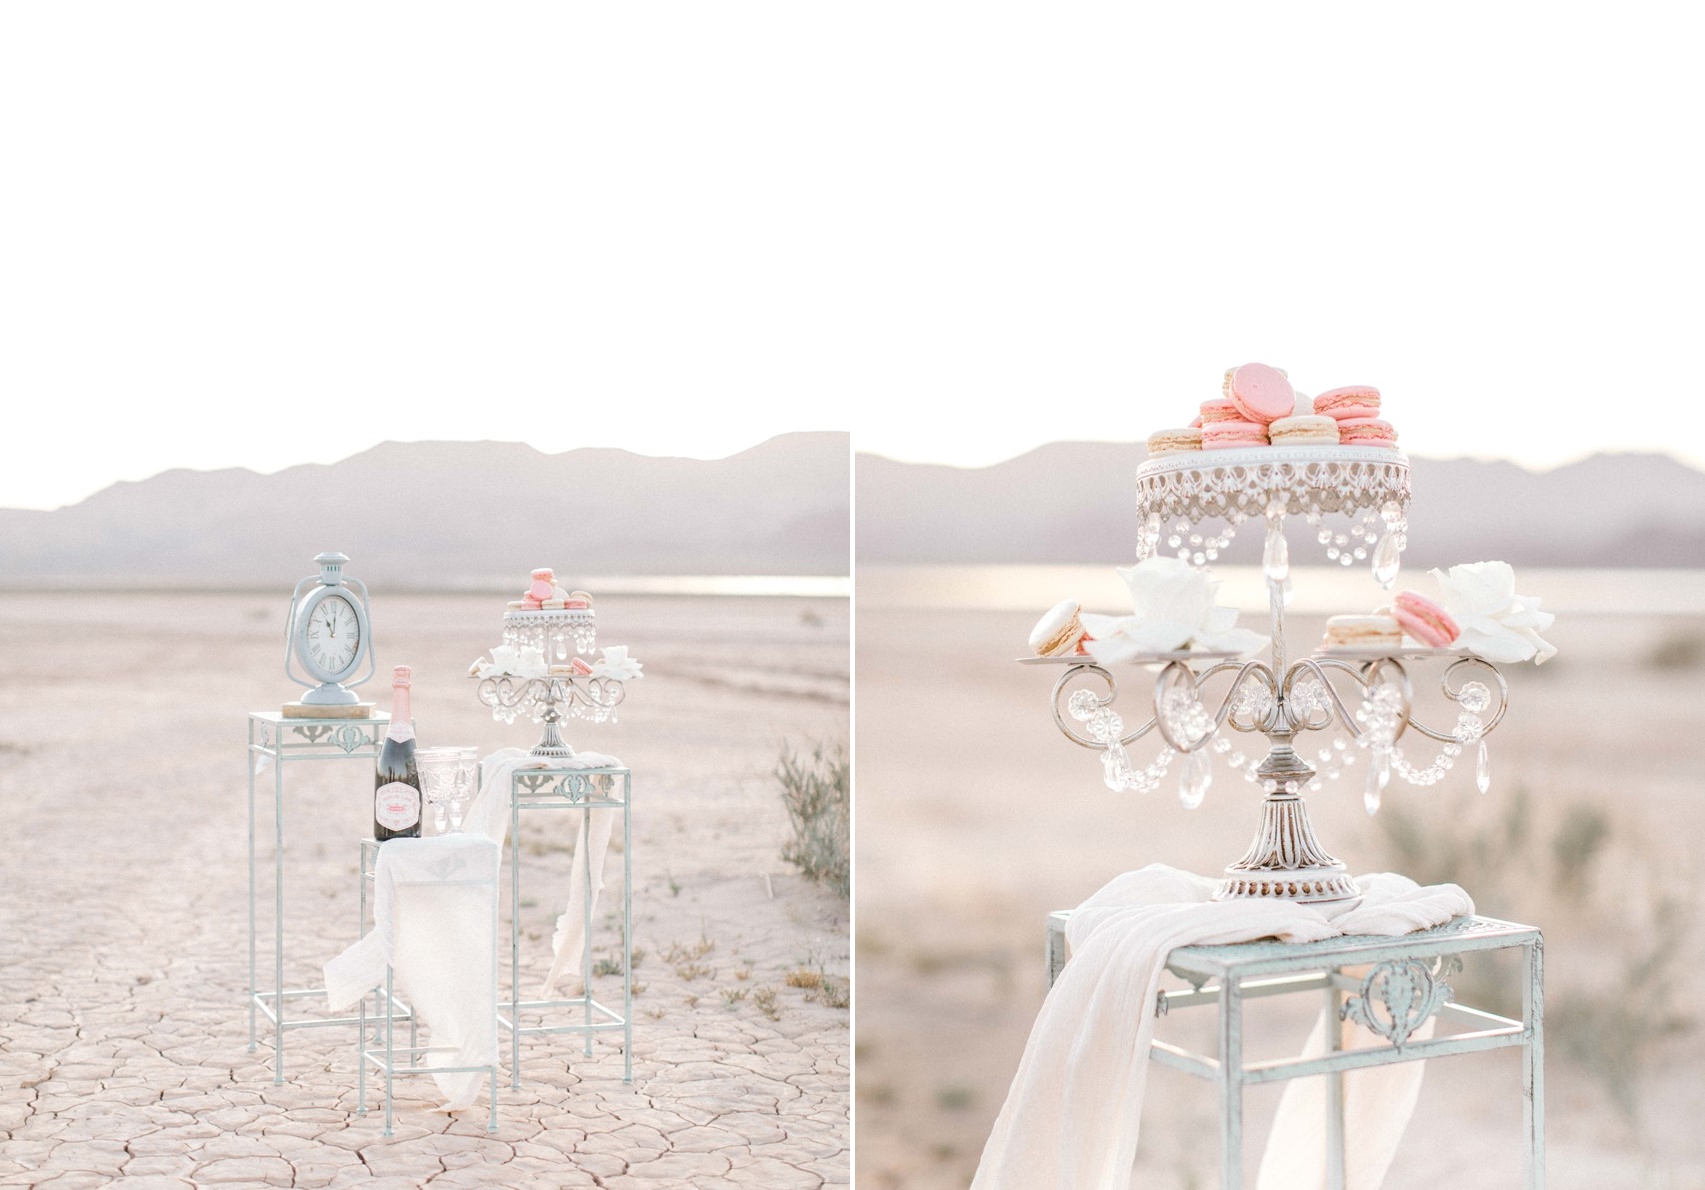 Desert Wedding Desserts